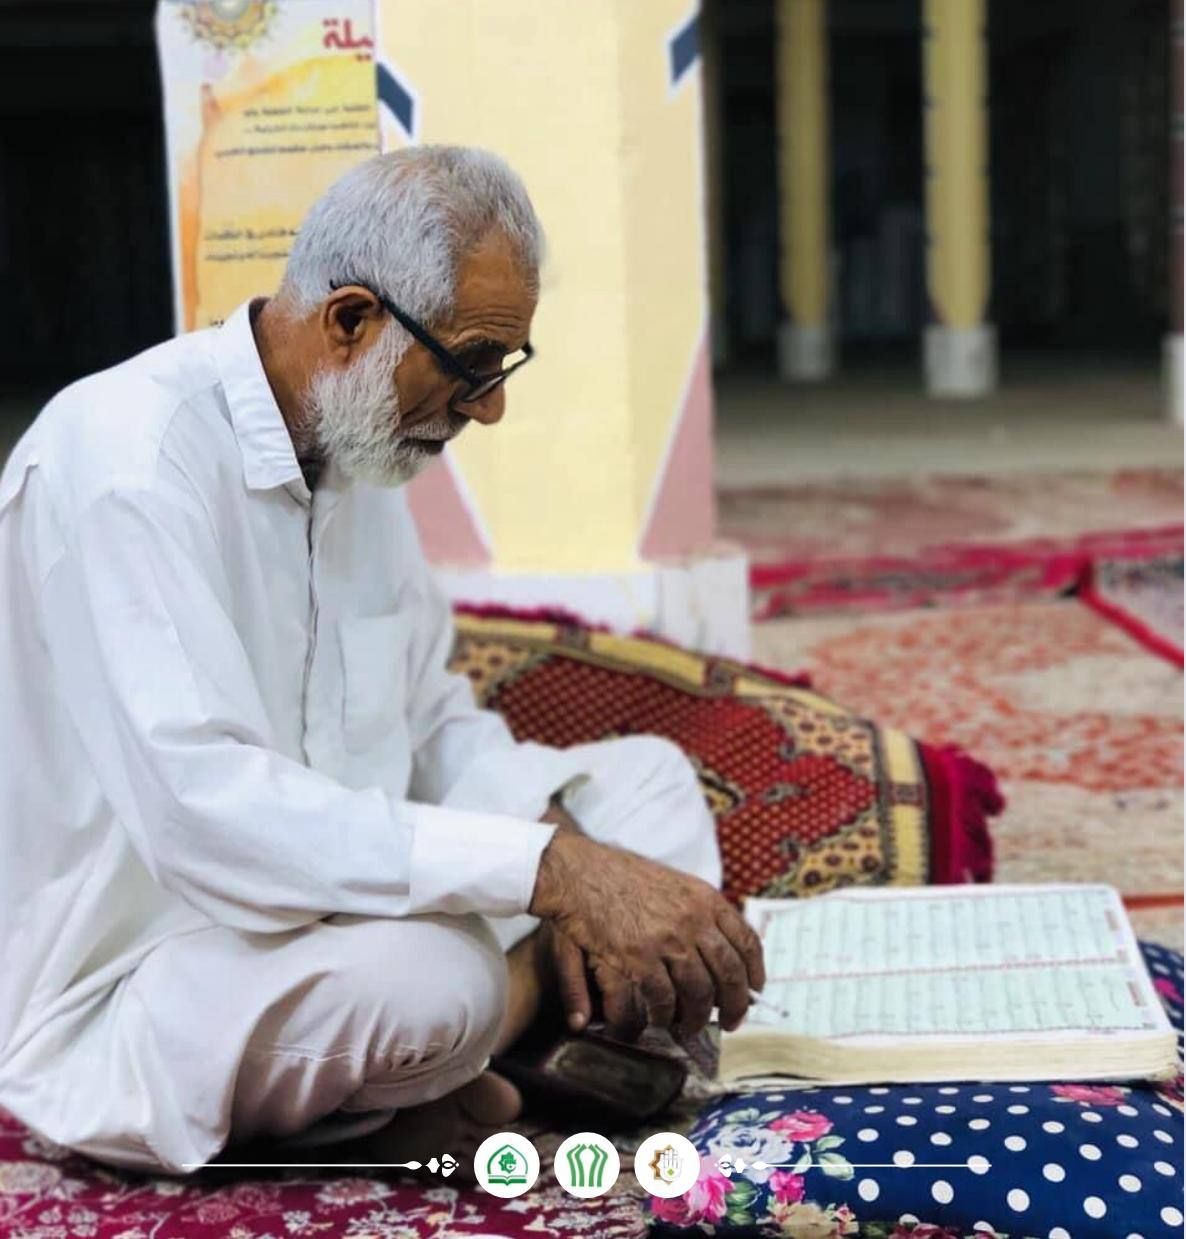 المَجمَع العلميّ يقيم جلسة تفسيرية لمفاهيم القرآن الكريم في قضاء الهندية